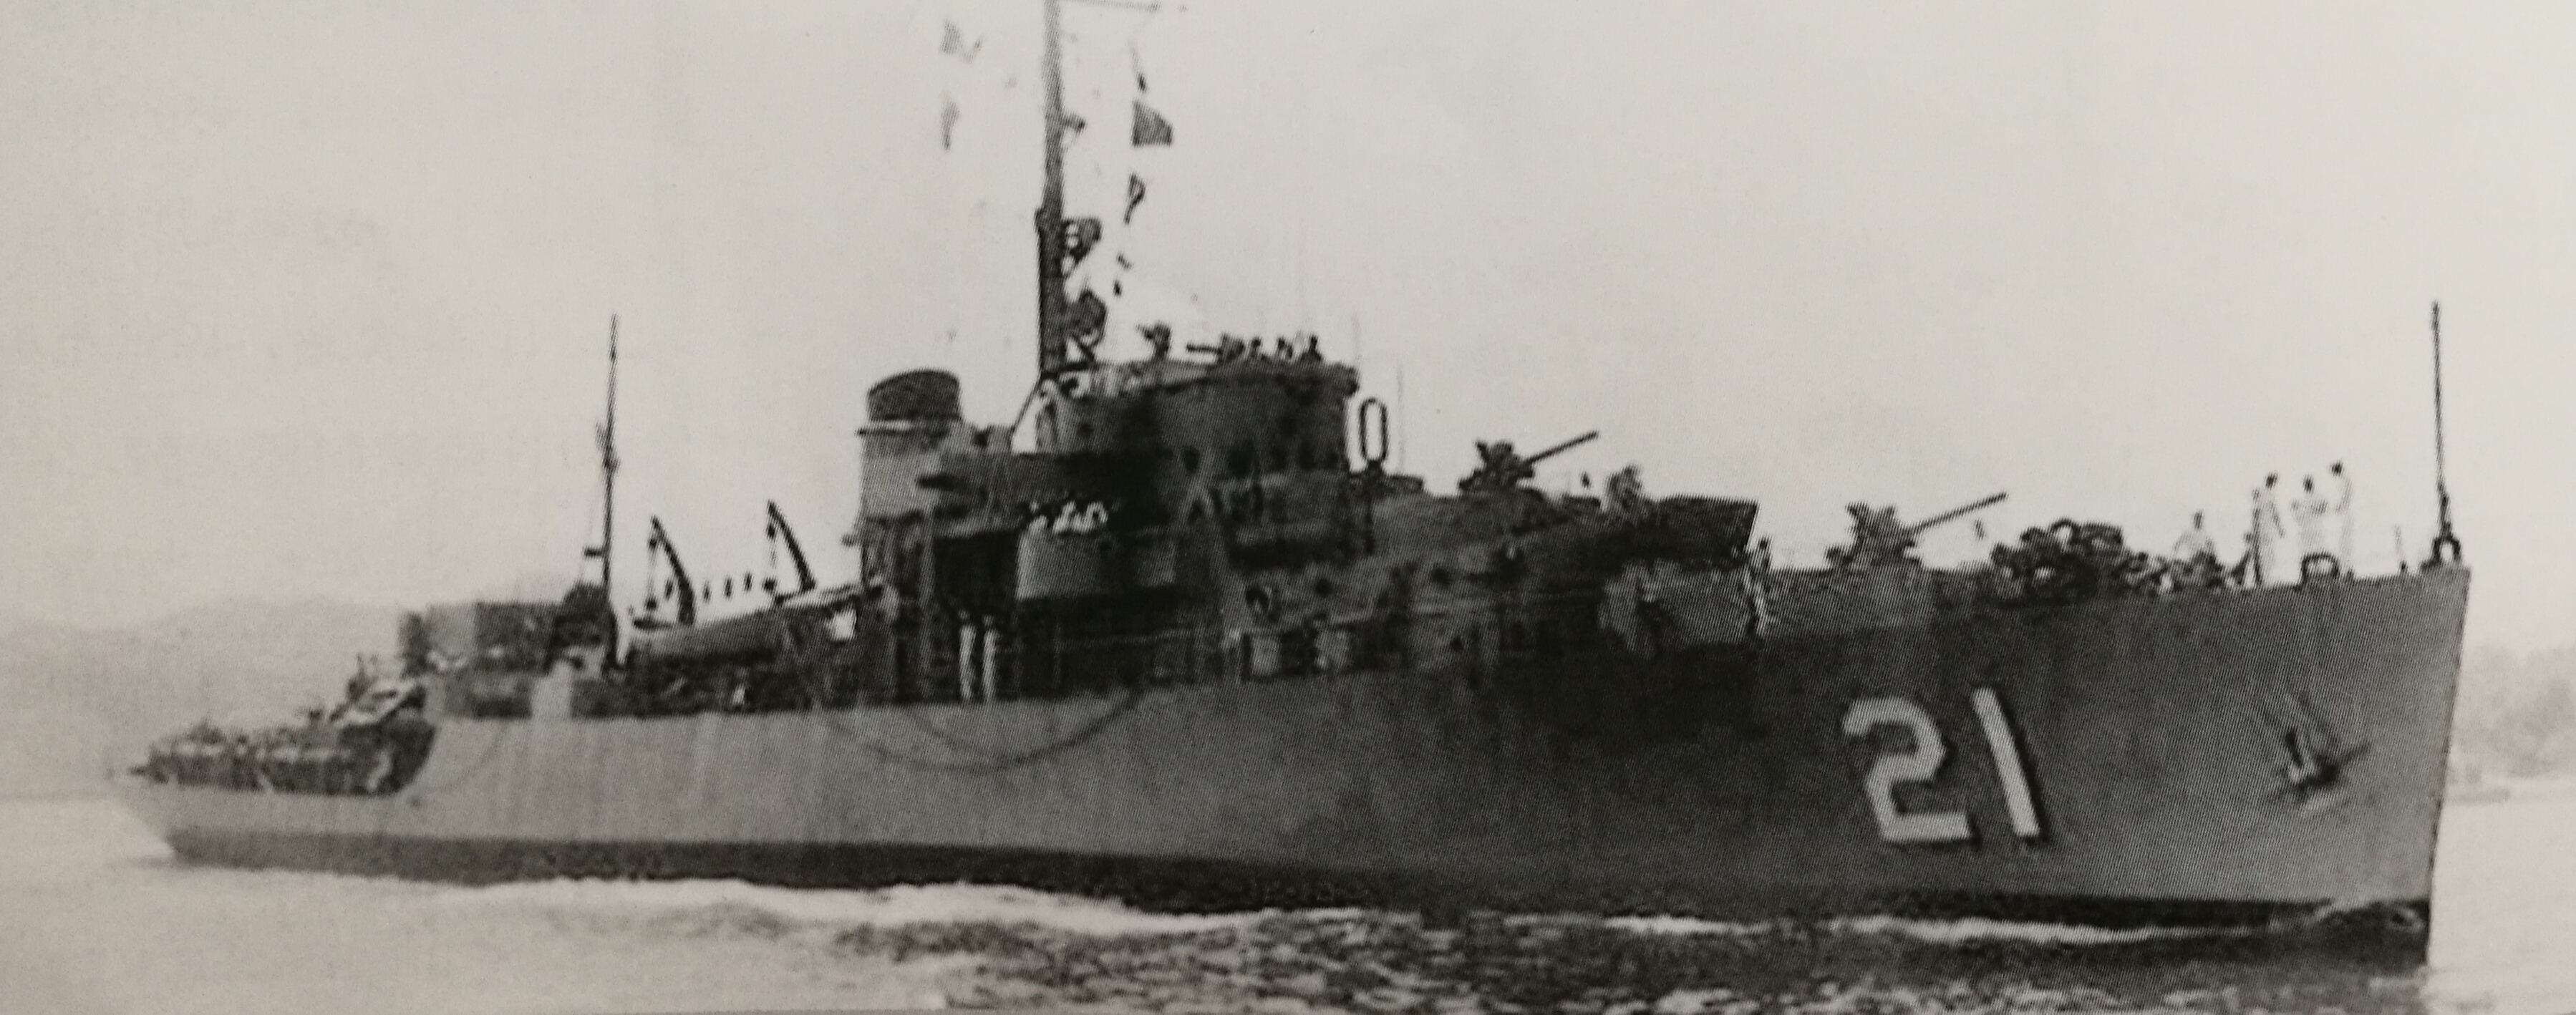 山毛櫸號，前身是美國海軍護衛艦“貝永”號